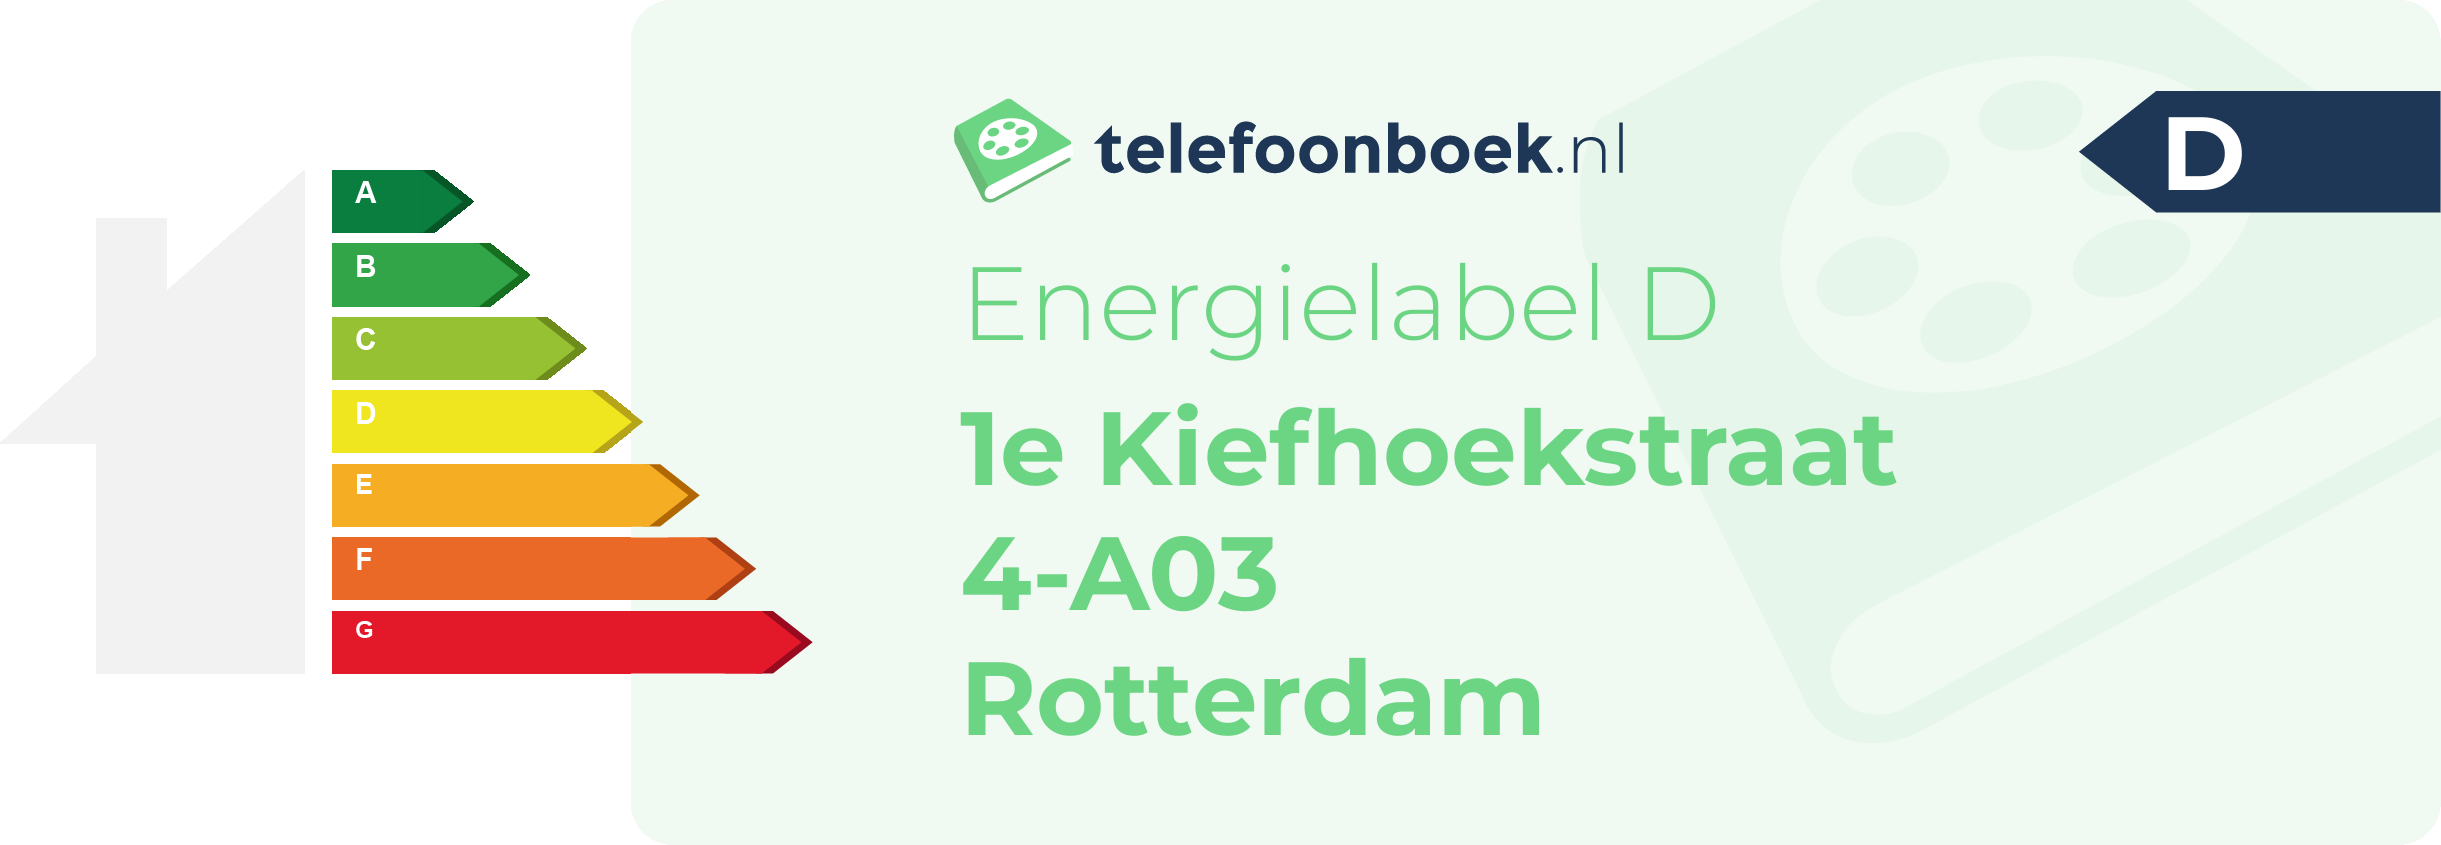 Energielabel 1e Kiefhoekstraat 4-A03 Rotterdam